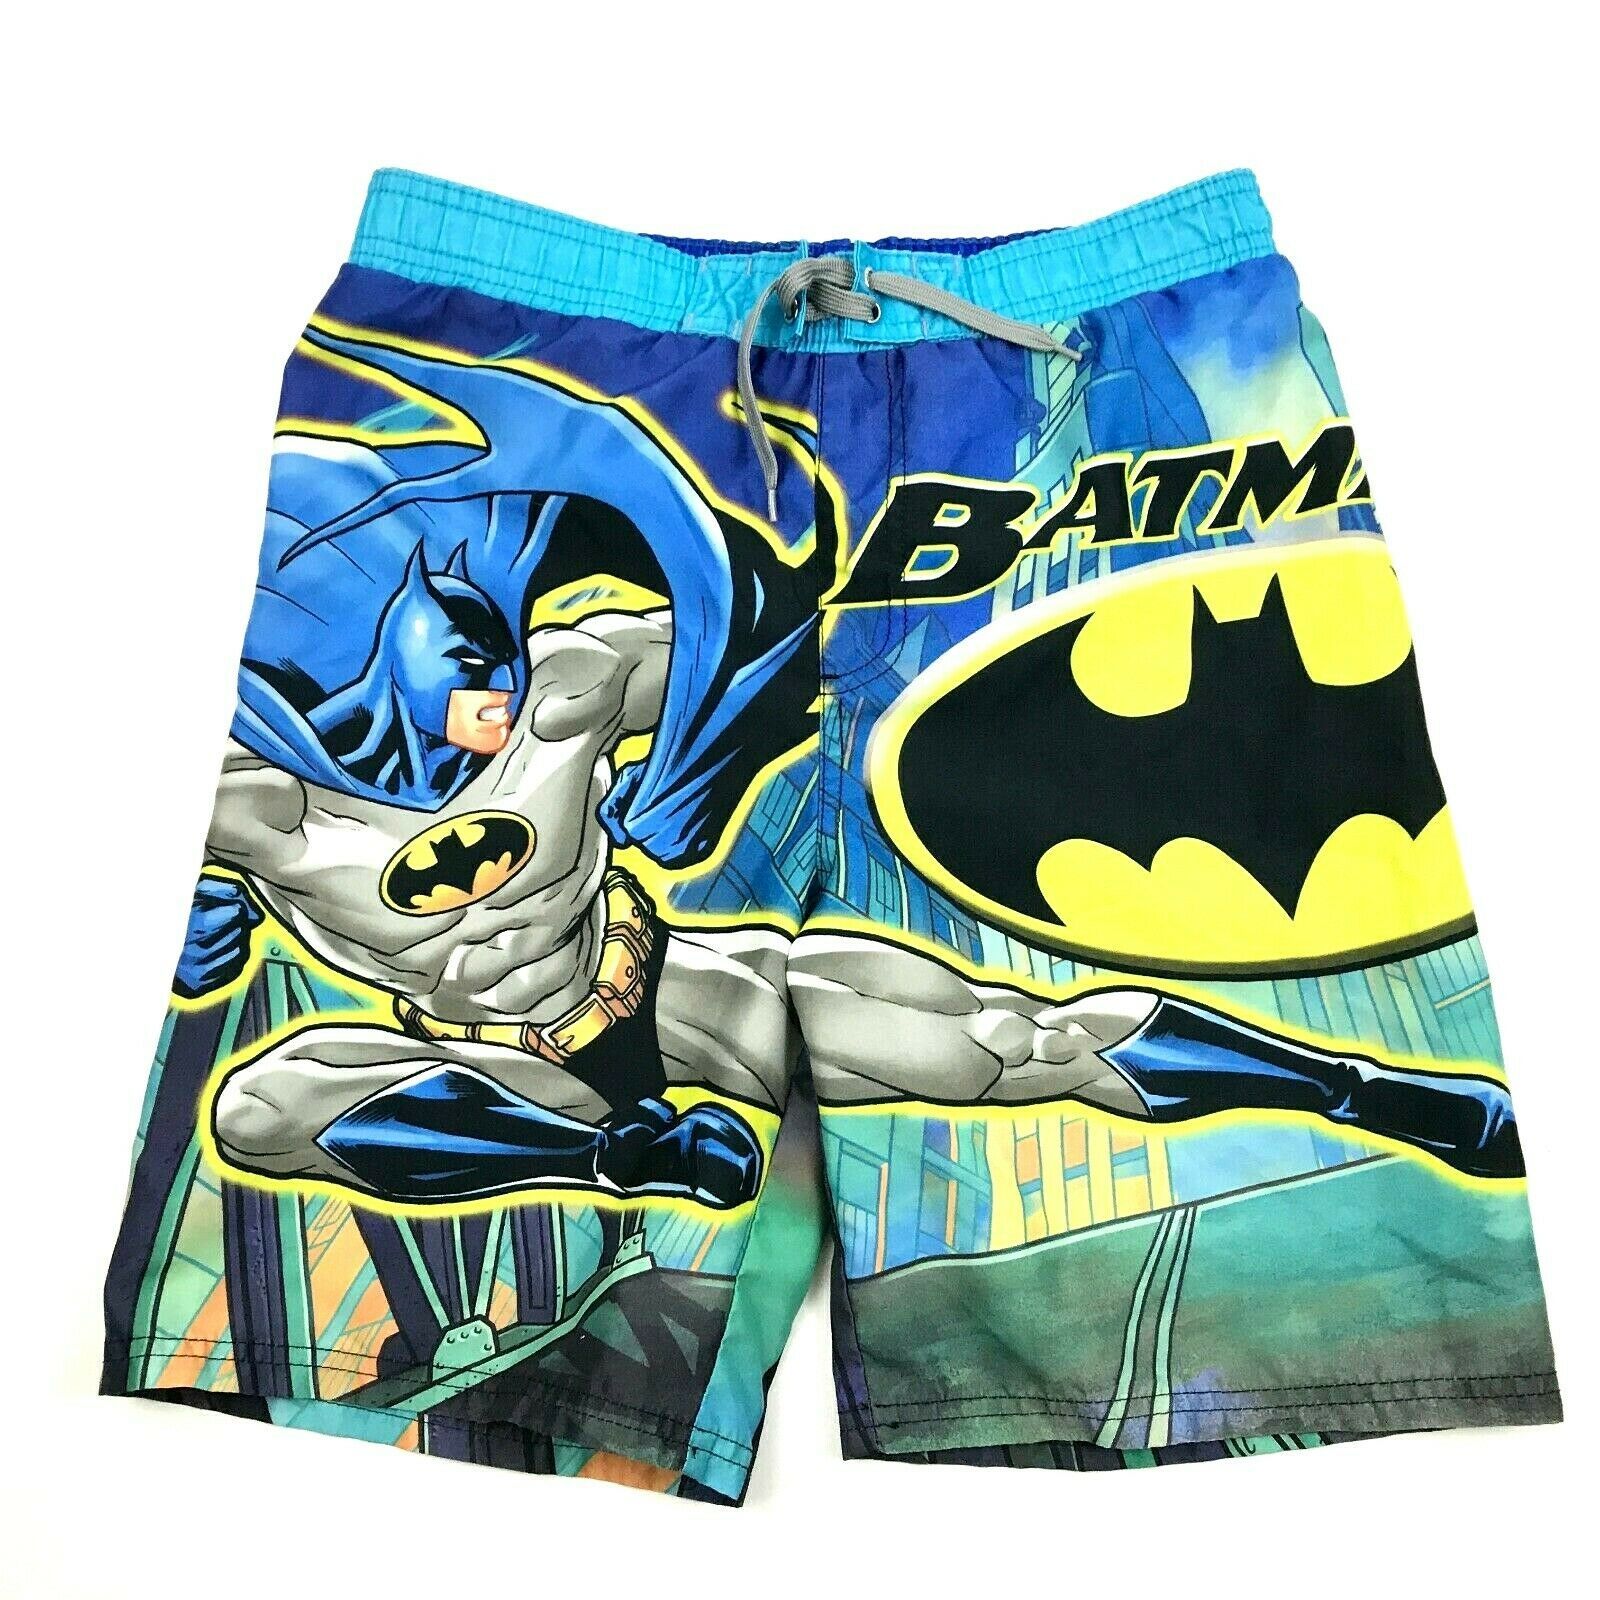 batman board shorts